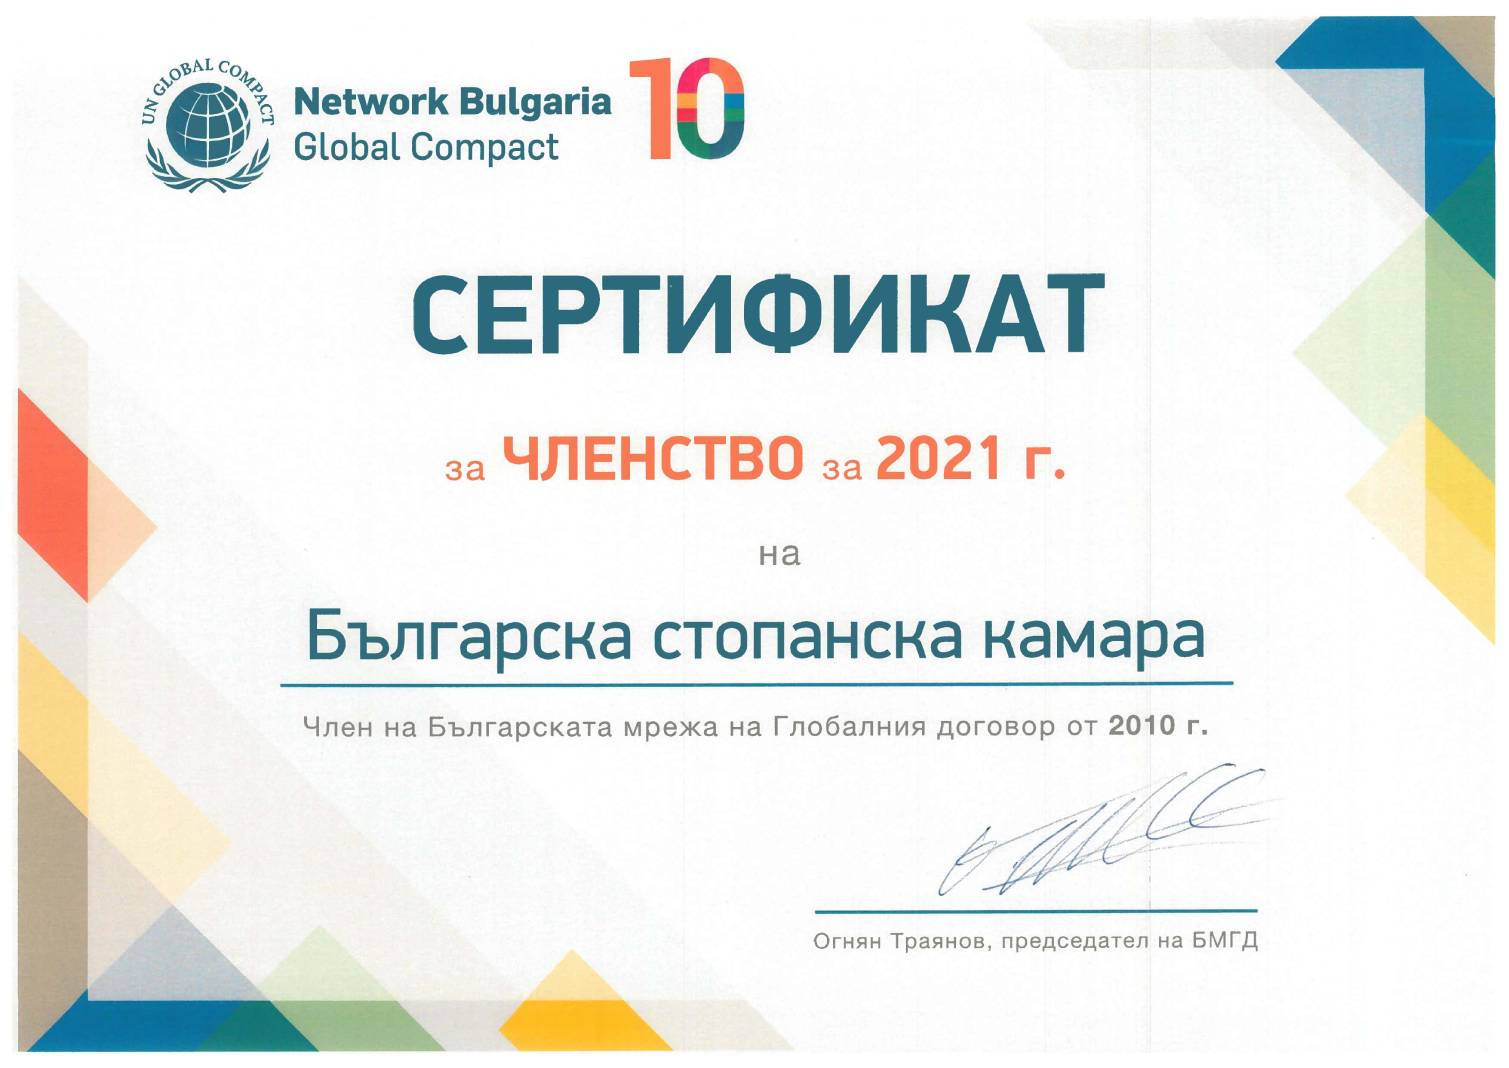 За десета година БСК е член на Българската мрежа на Глобалния договор на ООН